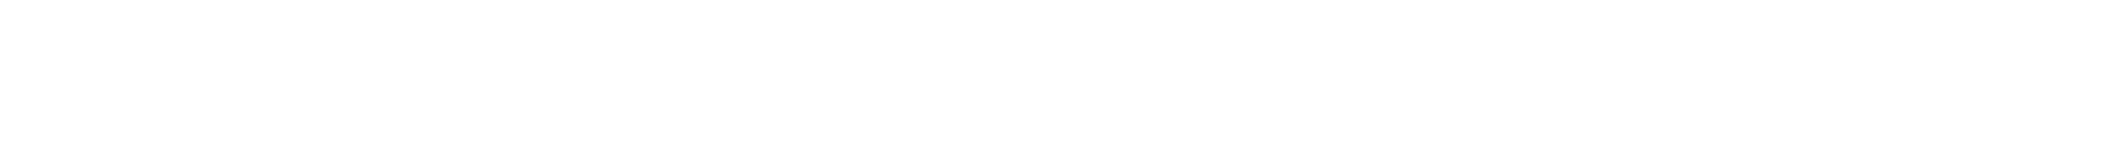 Super C Logo - Super C Group, LLC – Supercuts